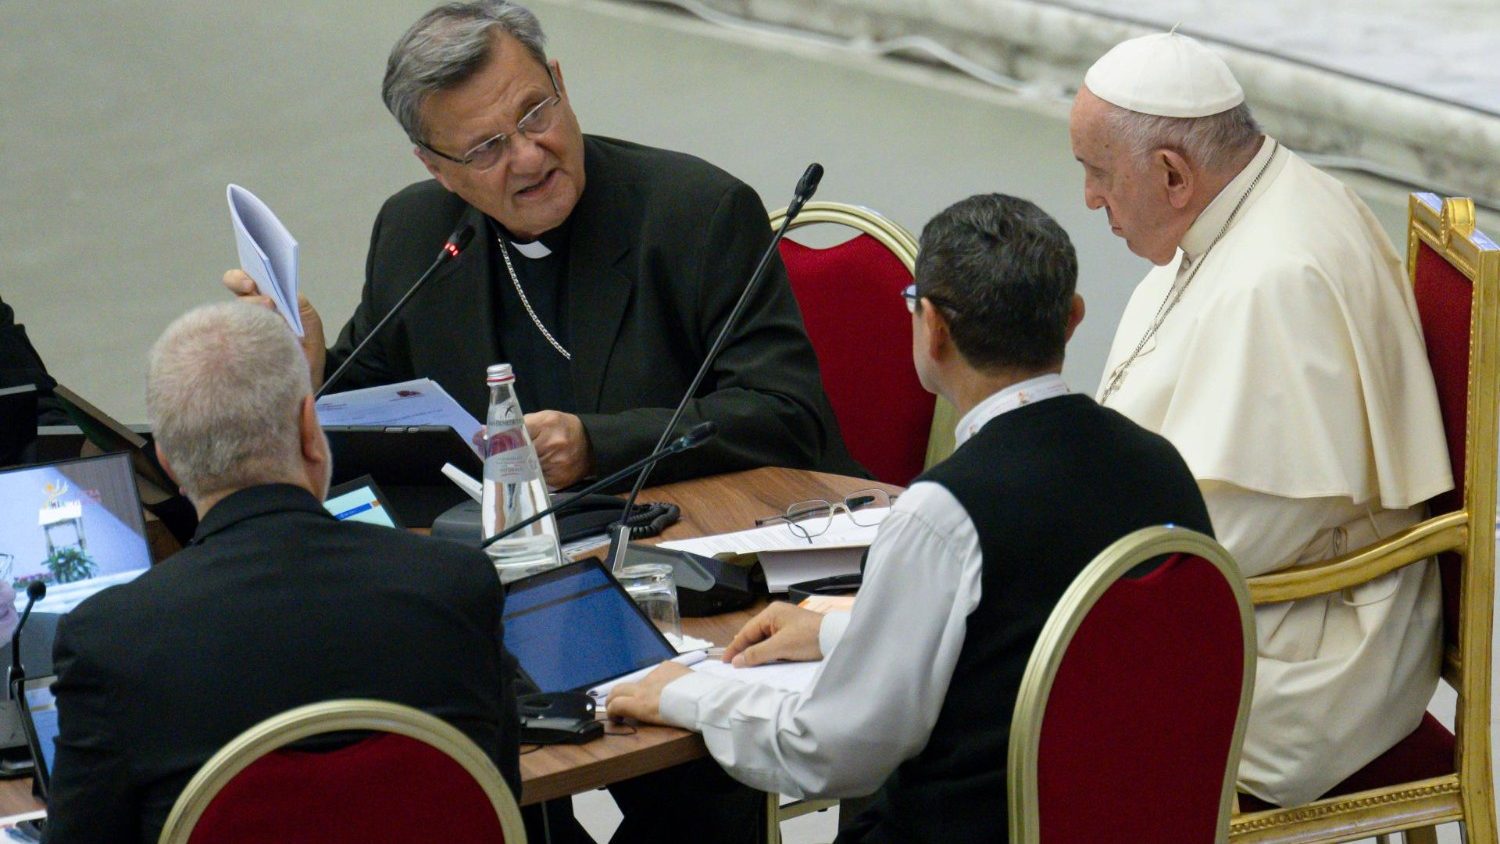 Il Papa avvia gruppi di studio sui temi scaturiti dal Concilio